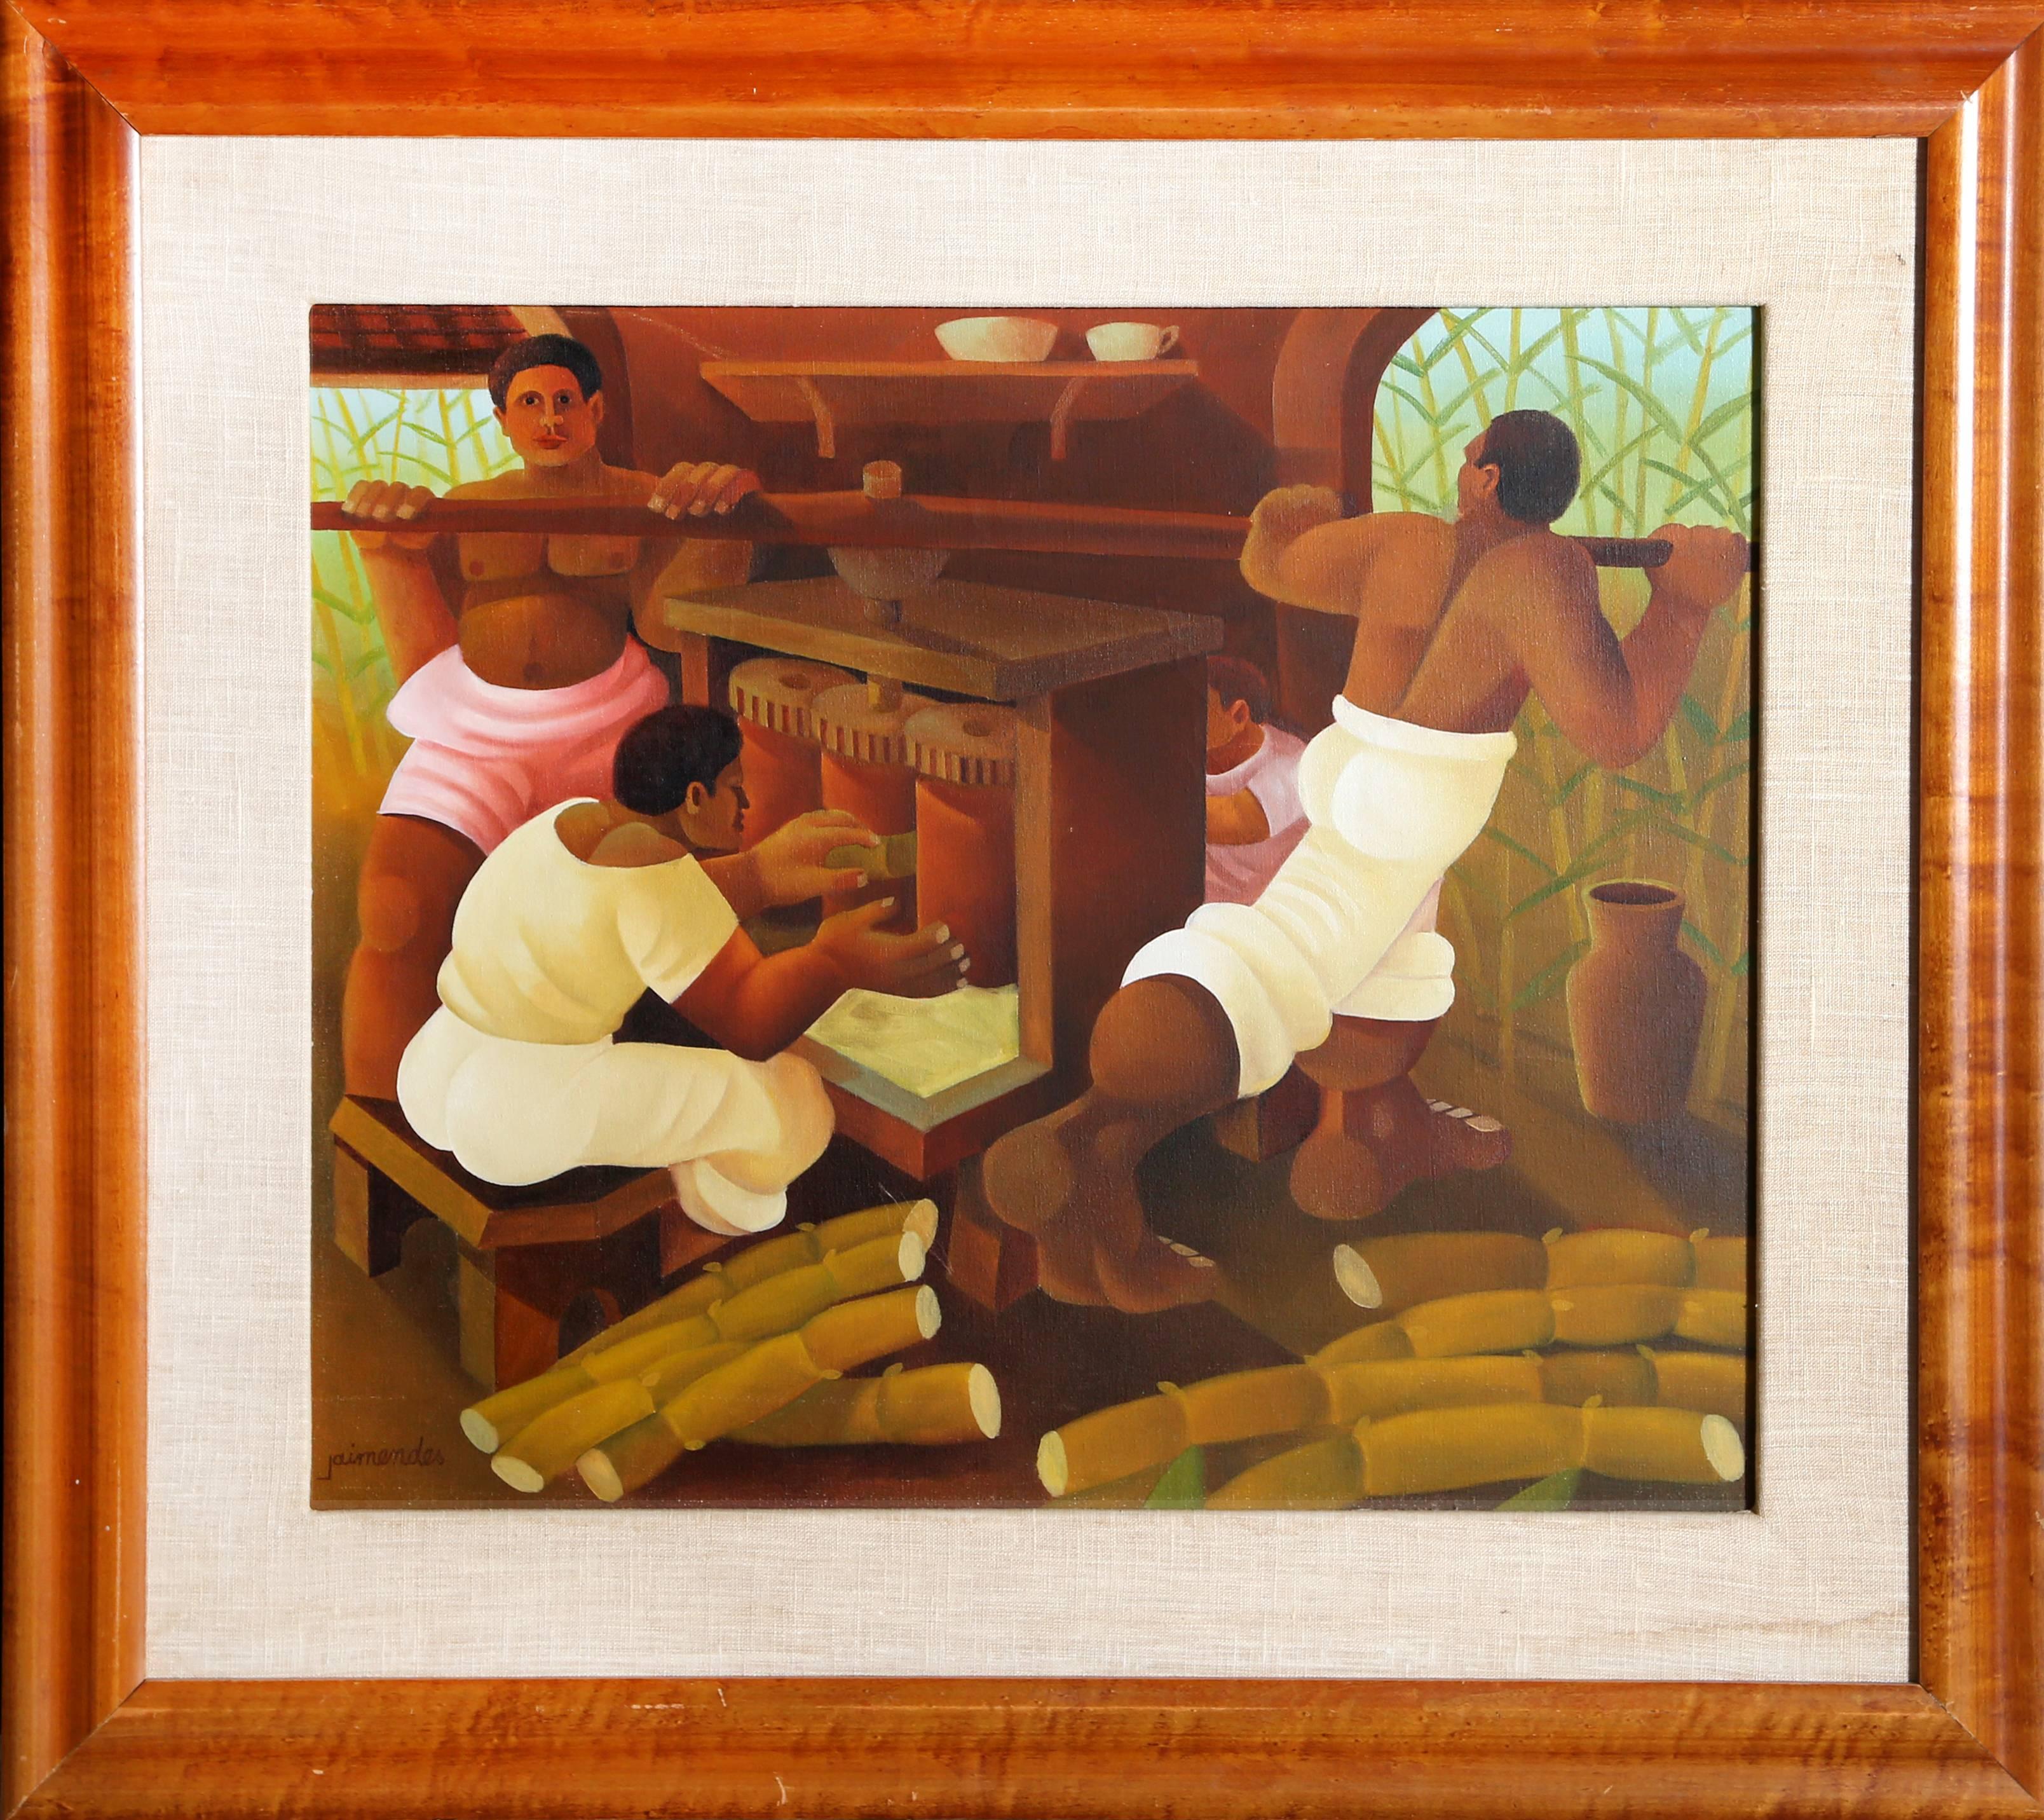 Artiste : Jaimendes, Brésilien (1939 - )
Titre : Broyage de la canne à sucre
Année : vers 1983
Moyen : Huile sur toile, signé à gauche.
Taille : 21,5 in. x 25,5 in. (54,61 cm x 64,77 cm)
Taille du cadre : 31 x 35 pouces